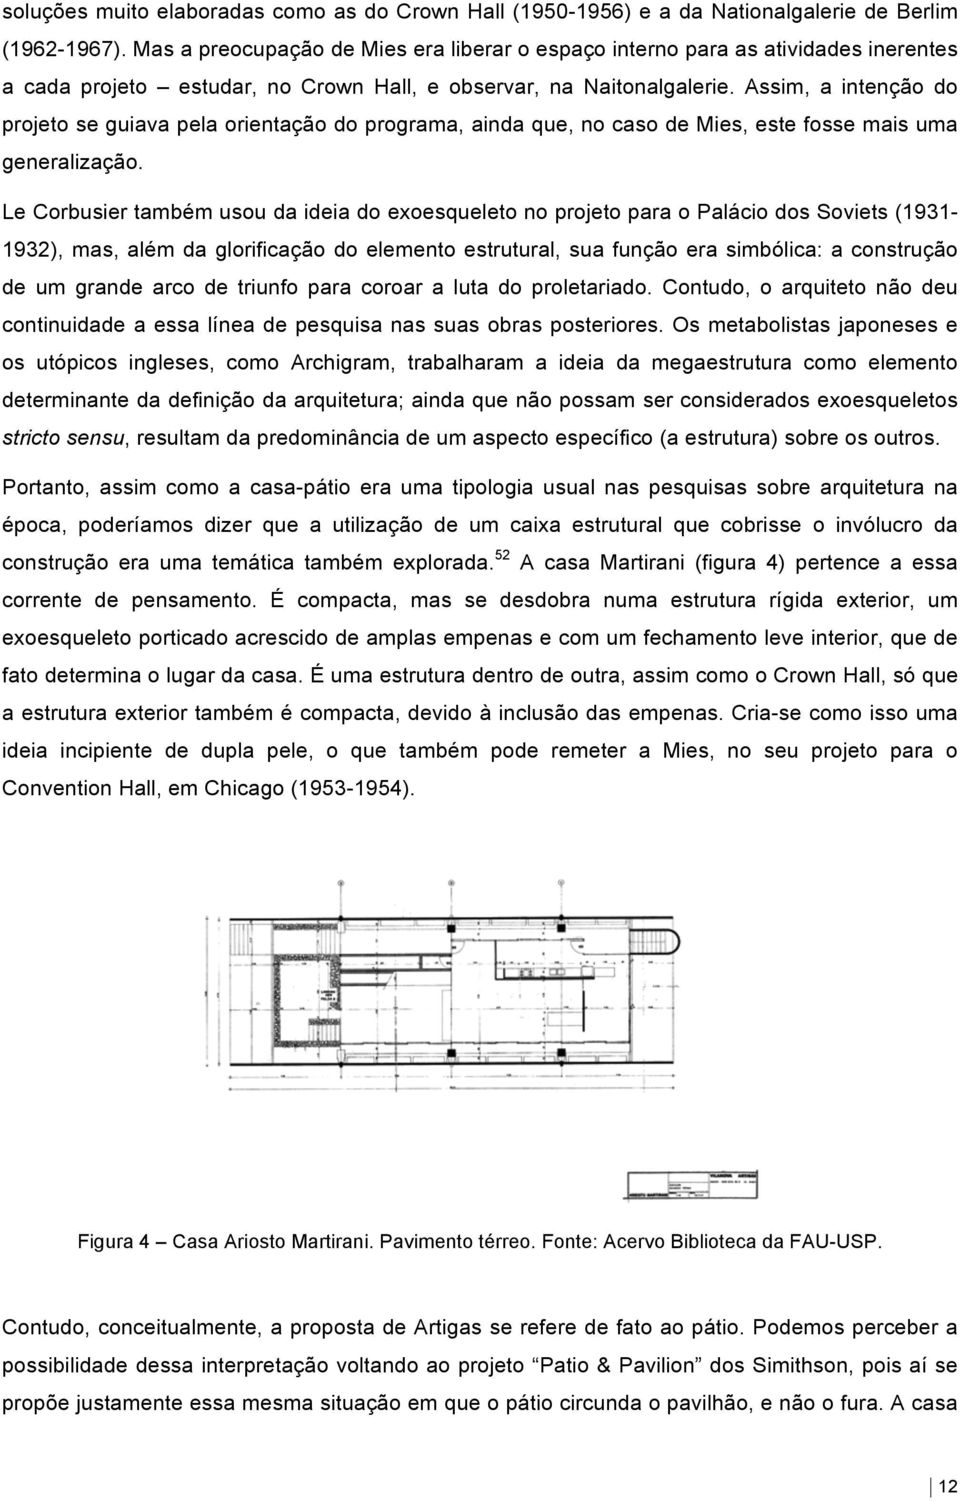 Assim, a intenção do projeto se guiava pela orientação do programa, ainda que, no caso de Mies, este fosse mais uma generalização.